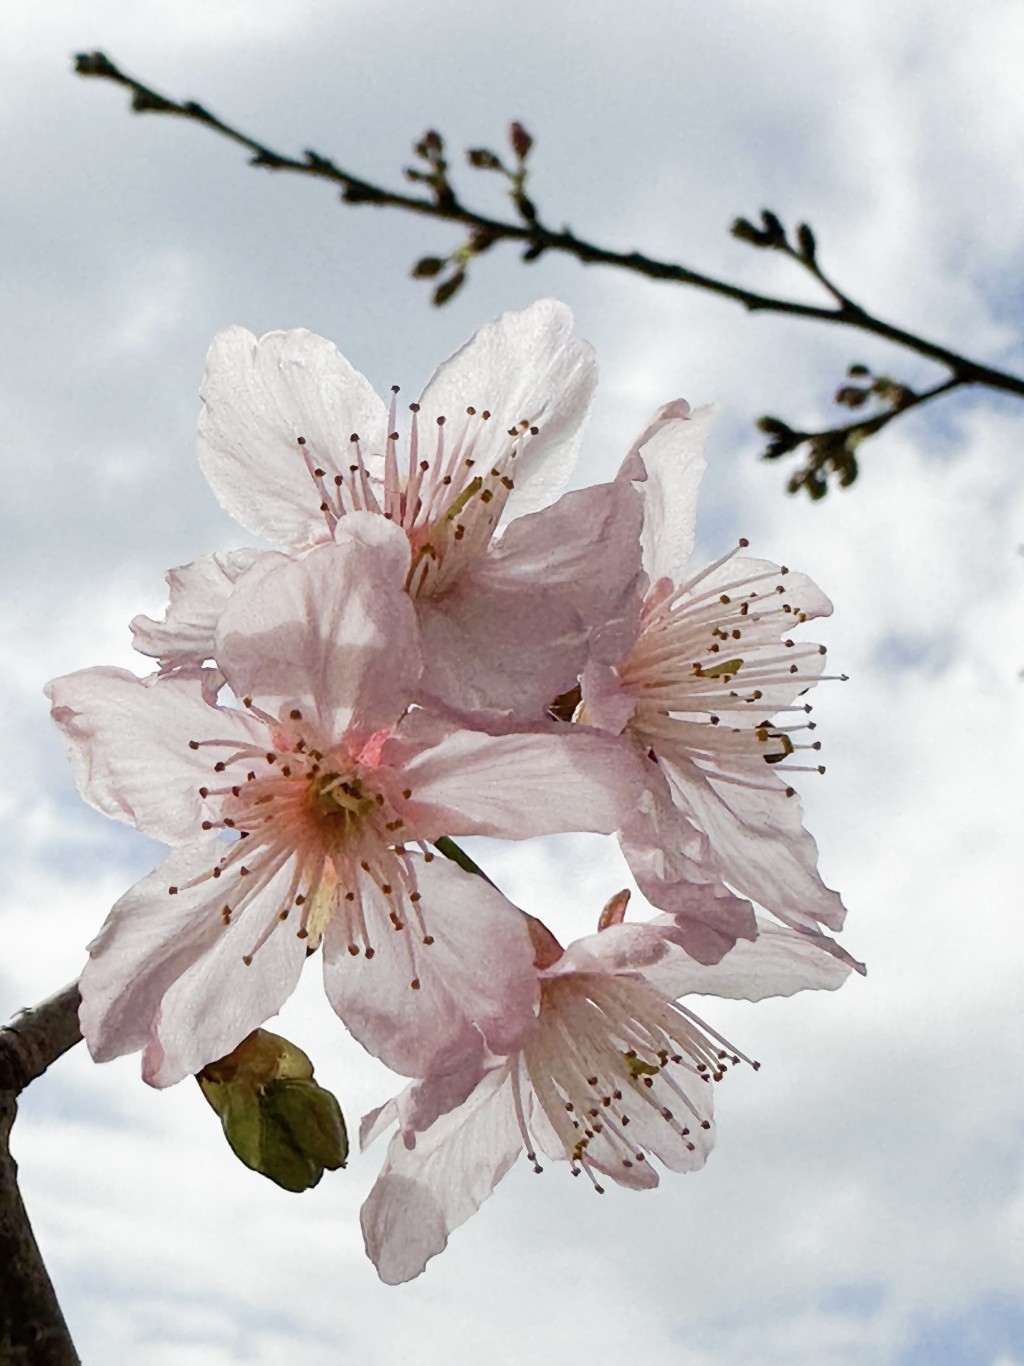 東涌、將軍澳、荔枝角公園都栽種有不同品種的櫻花樹